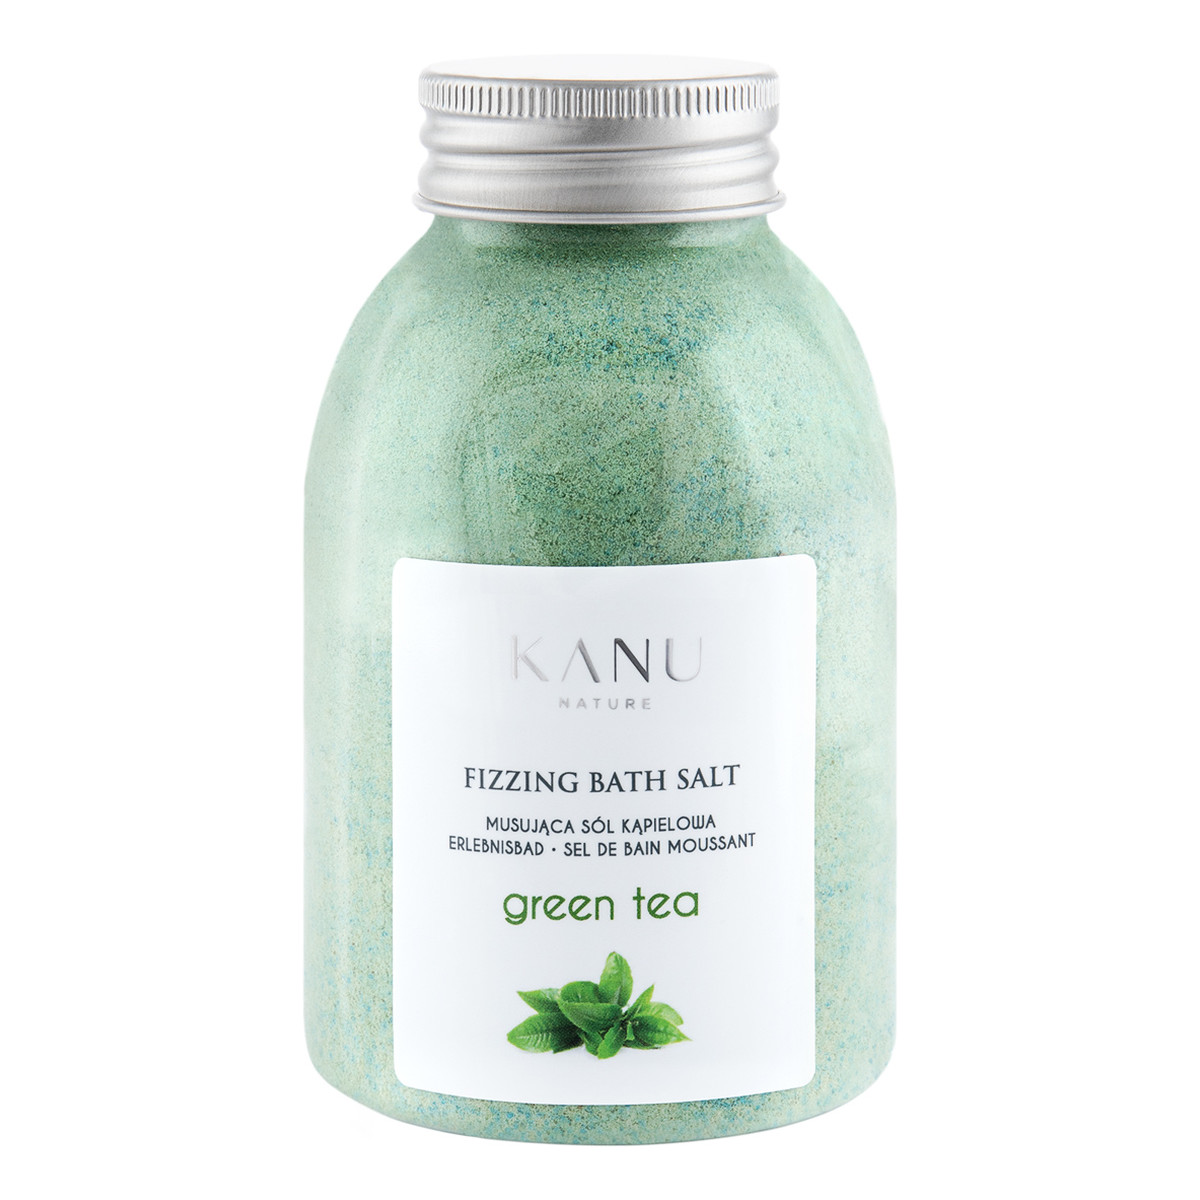 Kanu Nature Fizzing bath salt sól musująca do kąpieli zielona herbata 250g